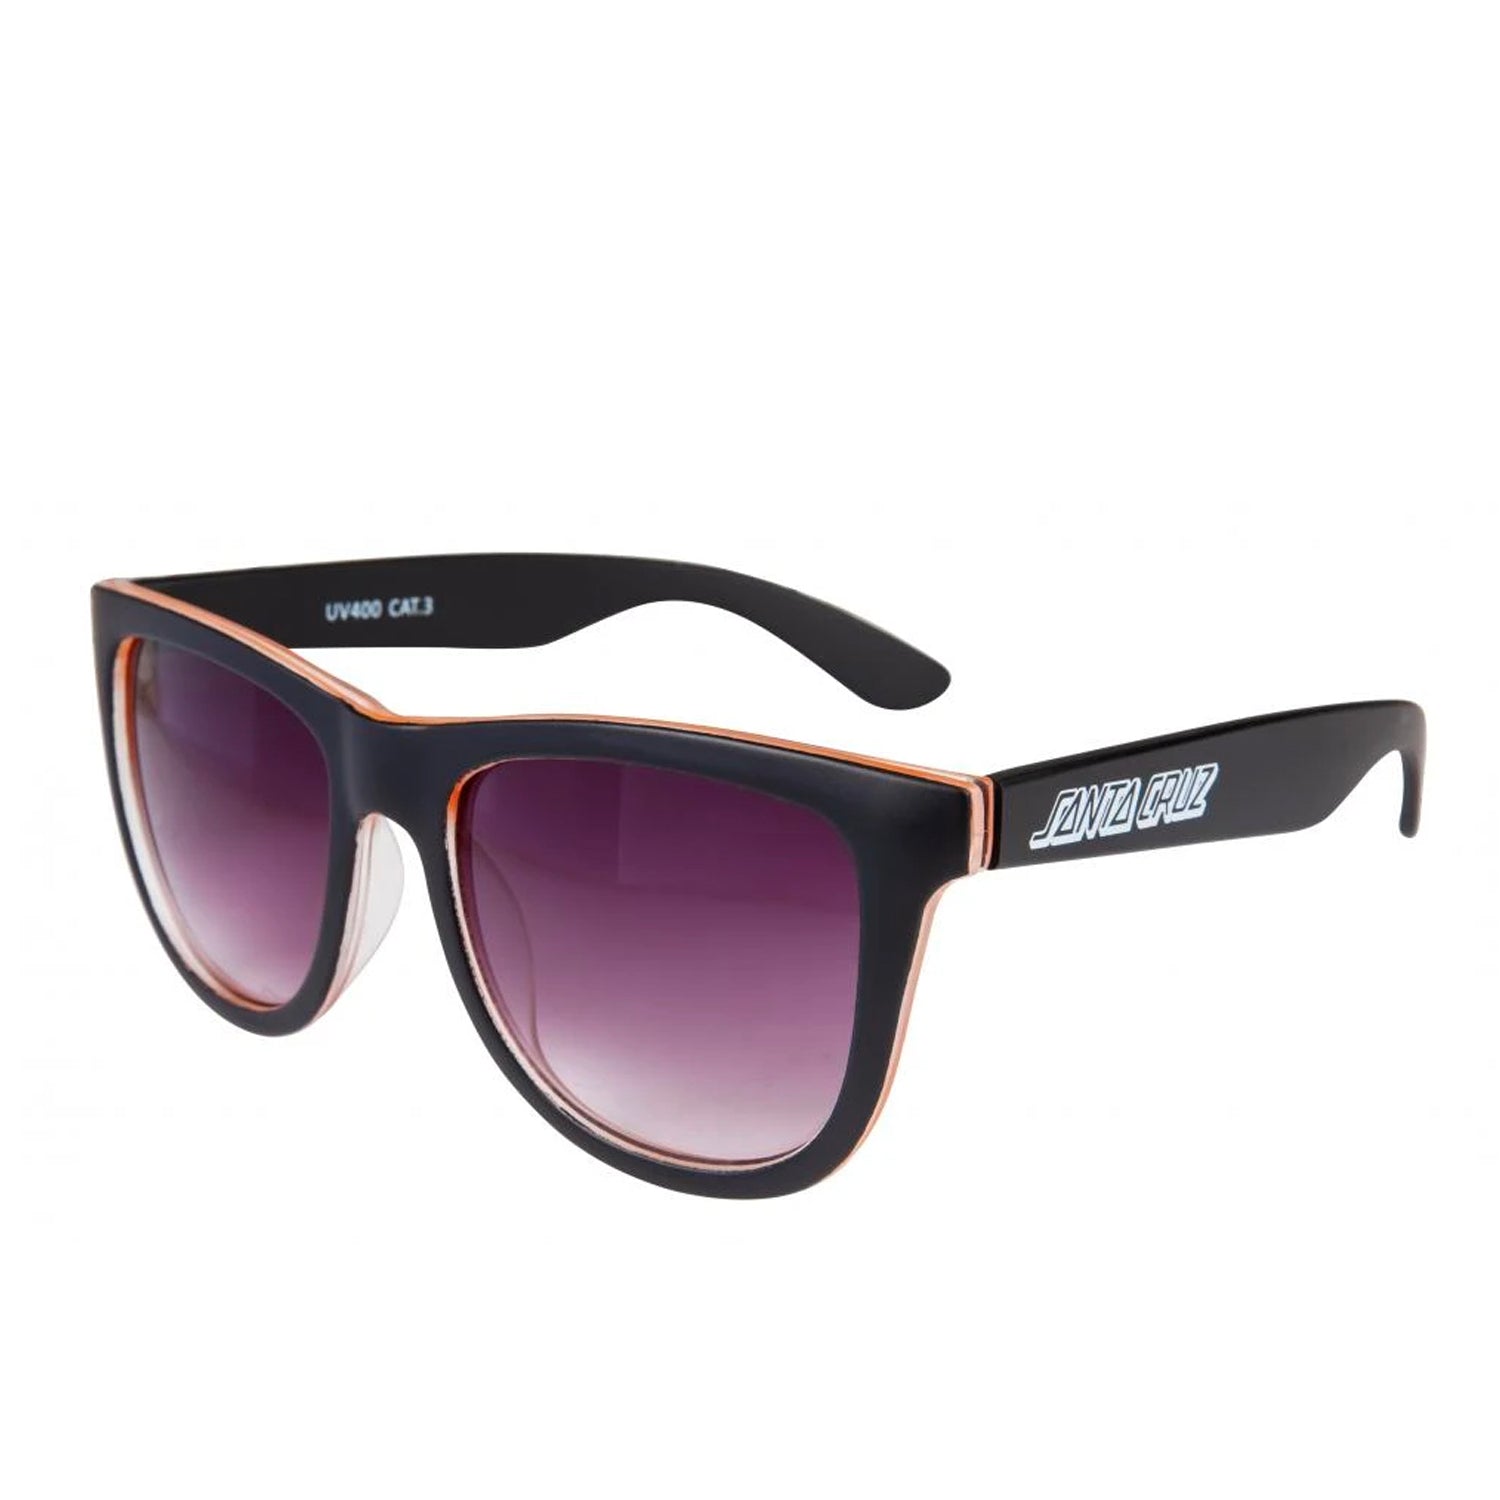 Santa Cruz Bench Sunglasses - Black / Orange - Prime Delux Store